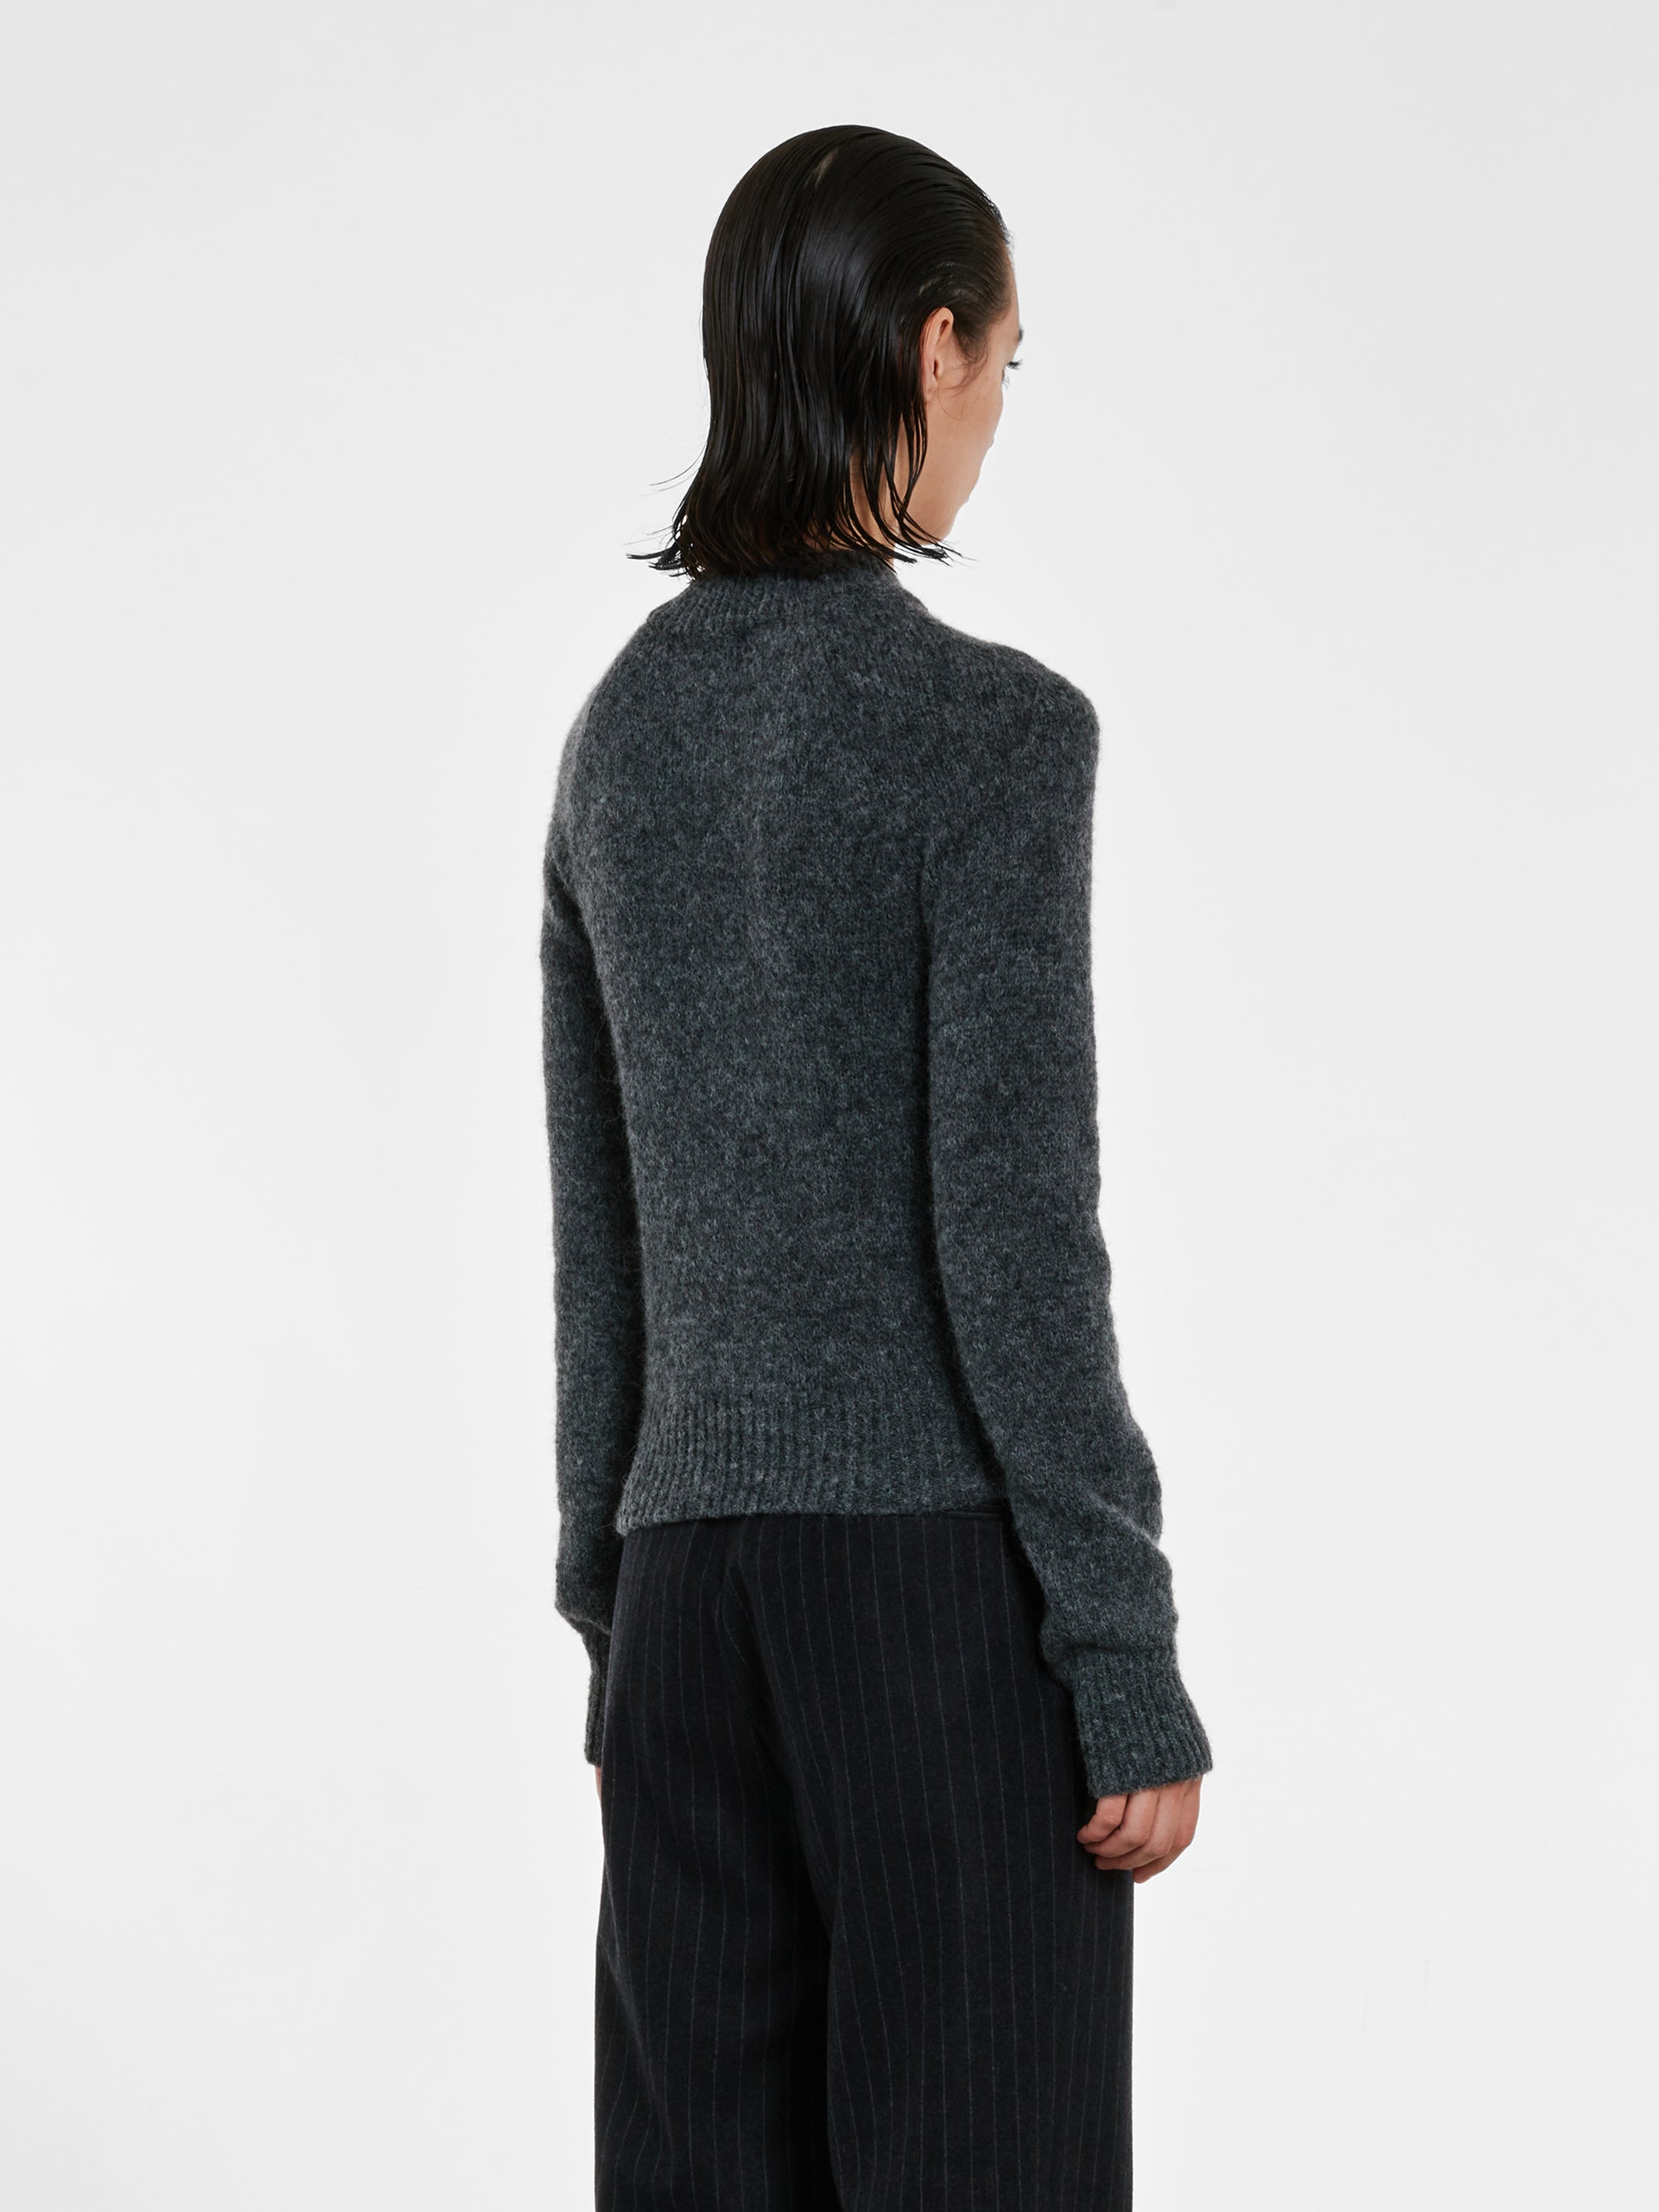 Dries Van Noten - Women’s Fitted Sweater - (Grey) view 3